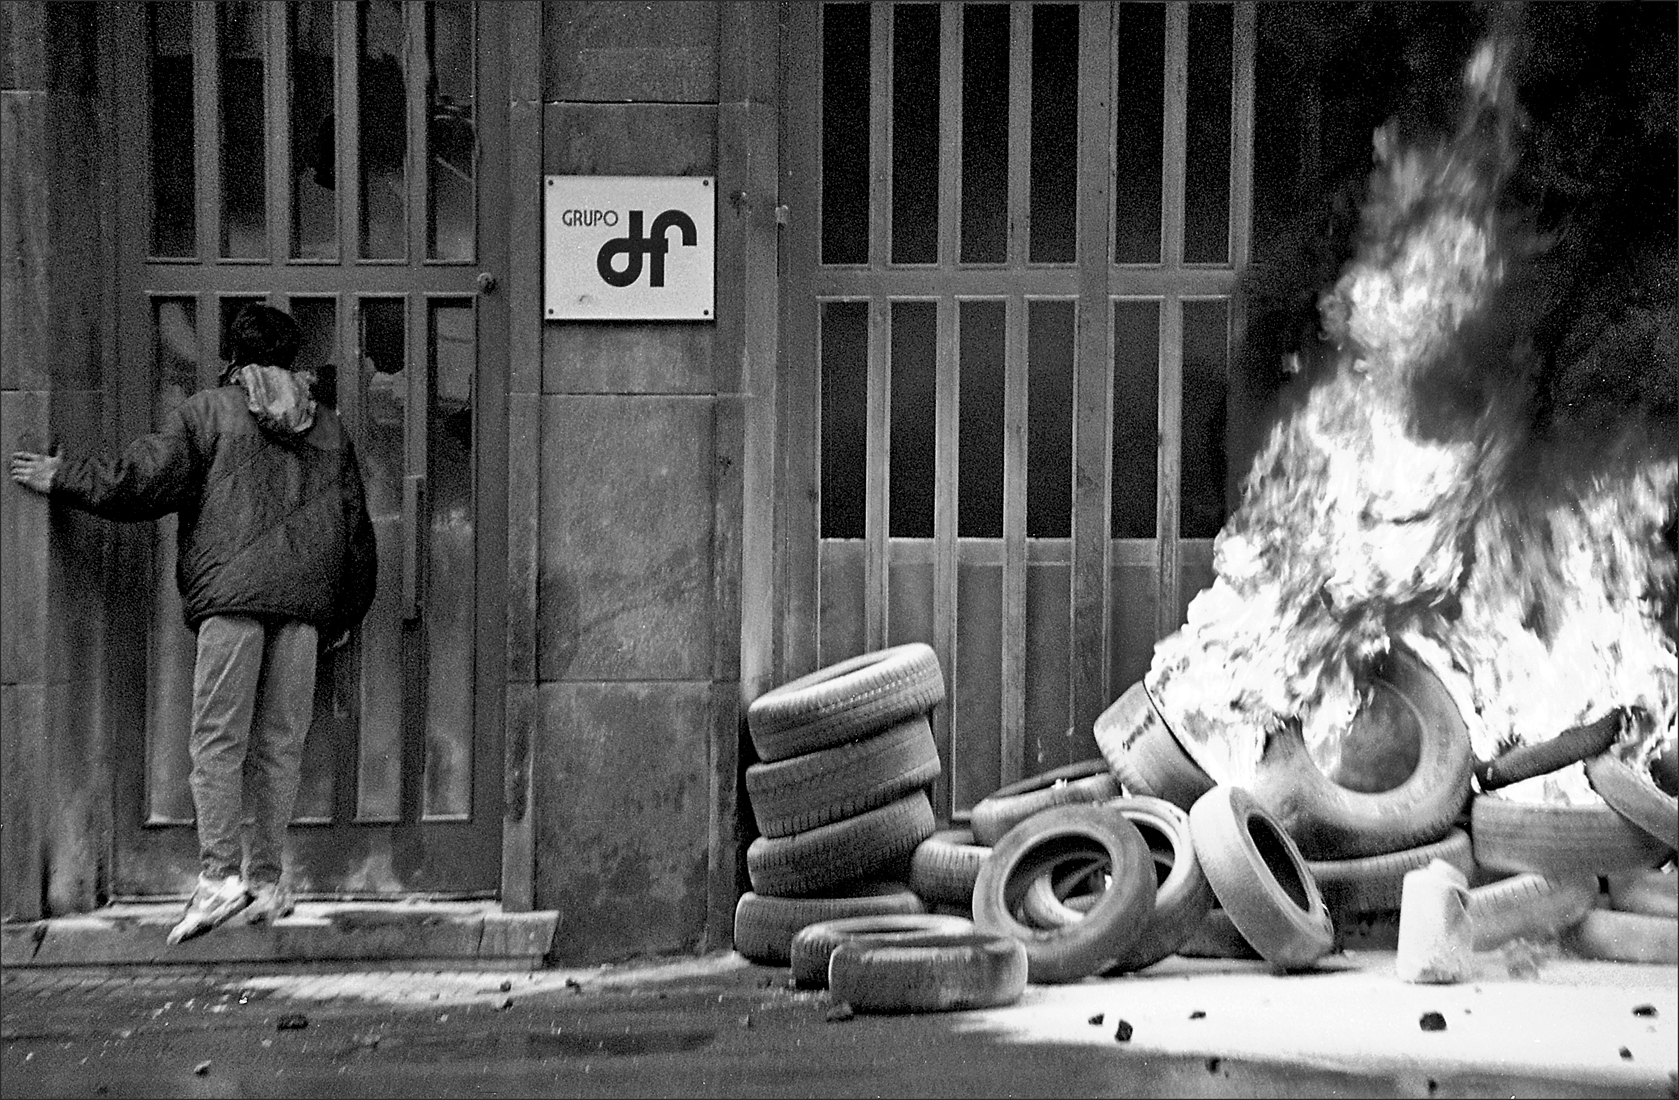 40 - Barricada de neumaticos a la puerta de las oficinas de Duro-Felguera , en protesta por los despidos en la empresa. Langreo. Asturias 1990 - BN